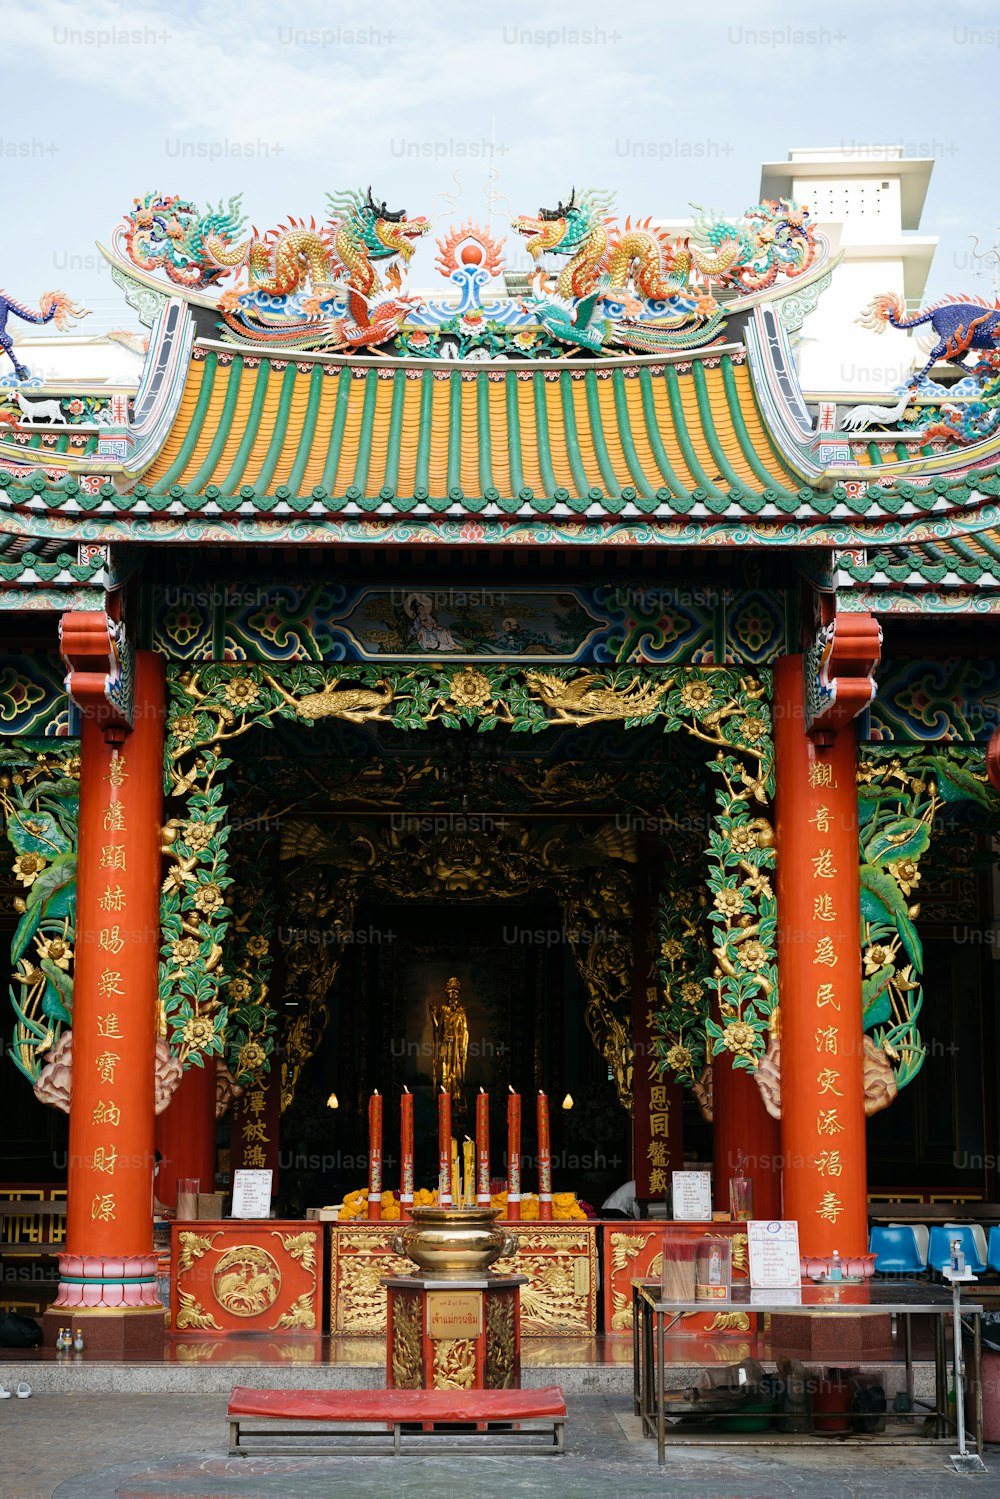 Um templo chinês com um santuário no meio dele